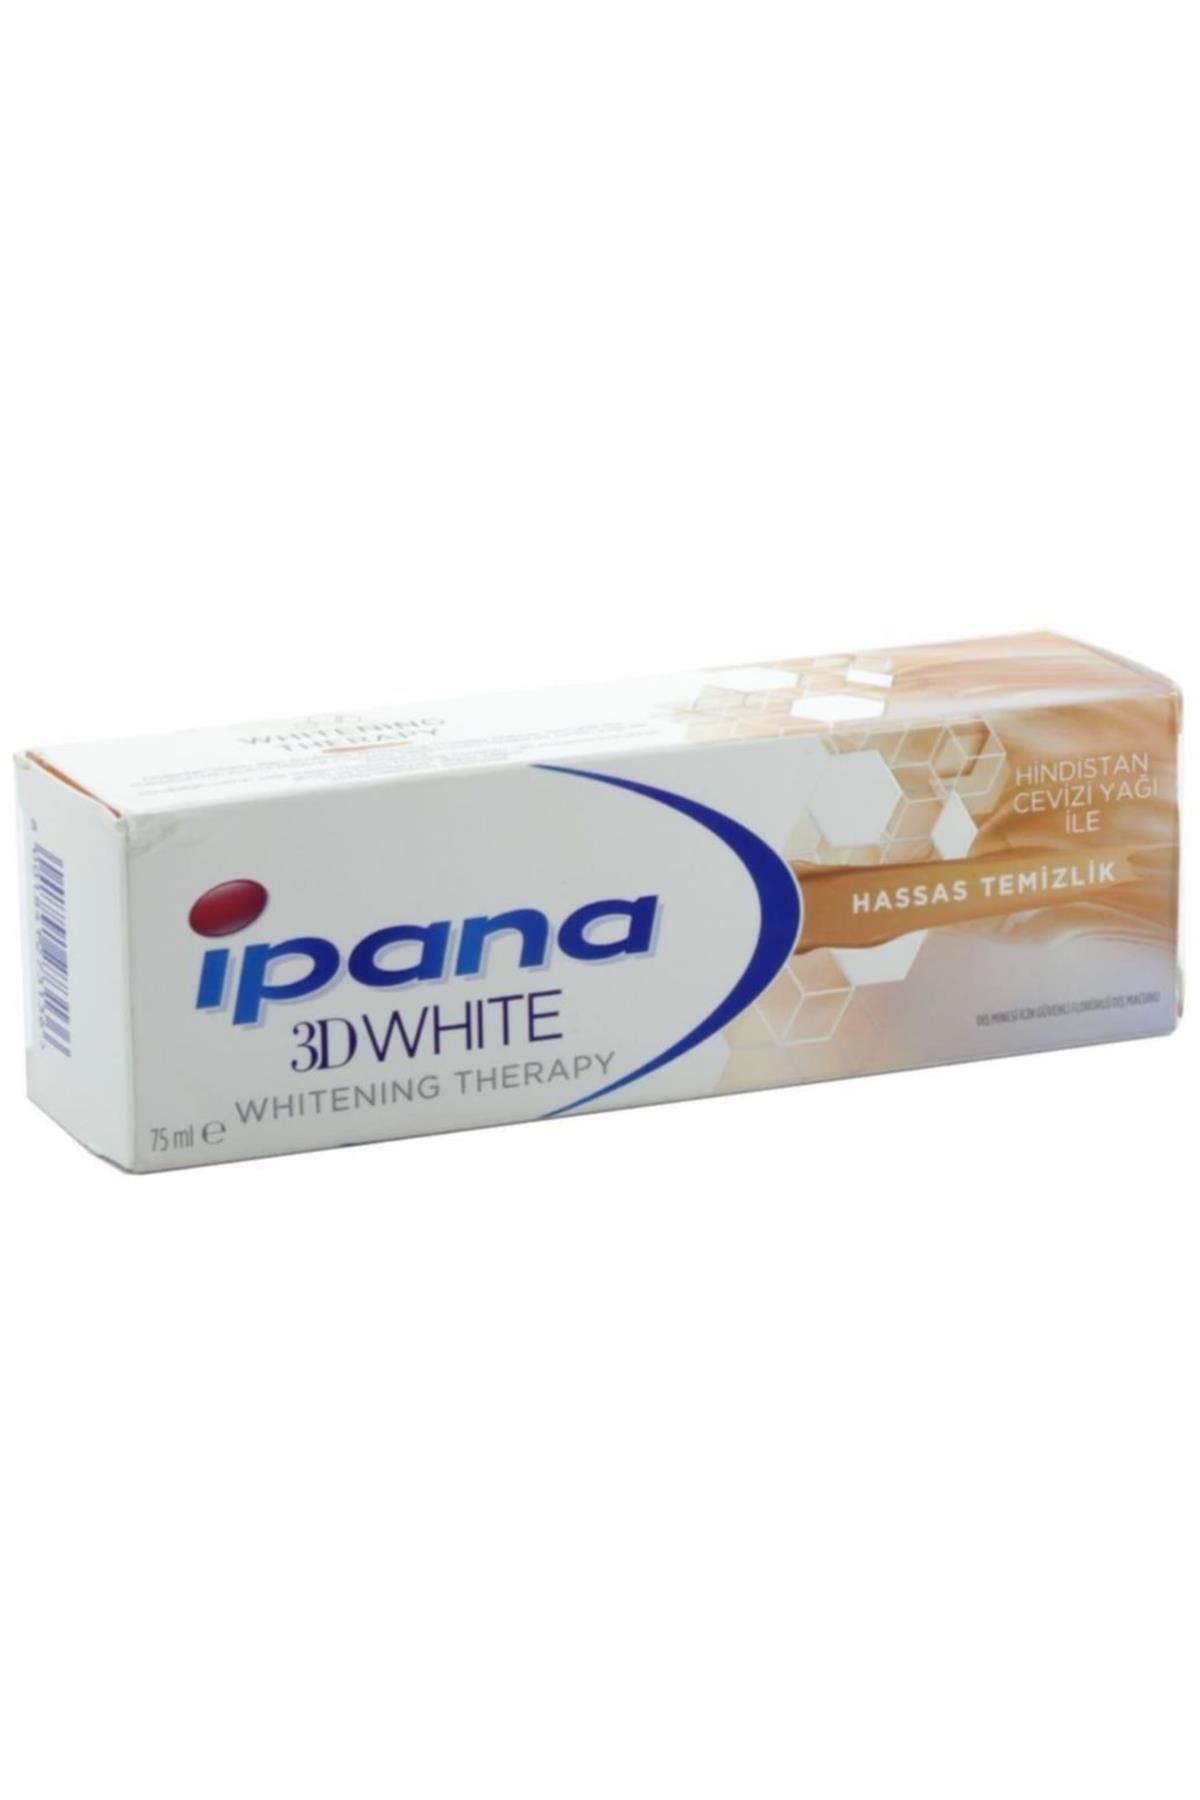 İpana 3d White Whitening Hassas Temizlik Hindistan Cevizi Yağı Diş Macunu 75 ml